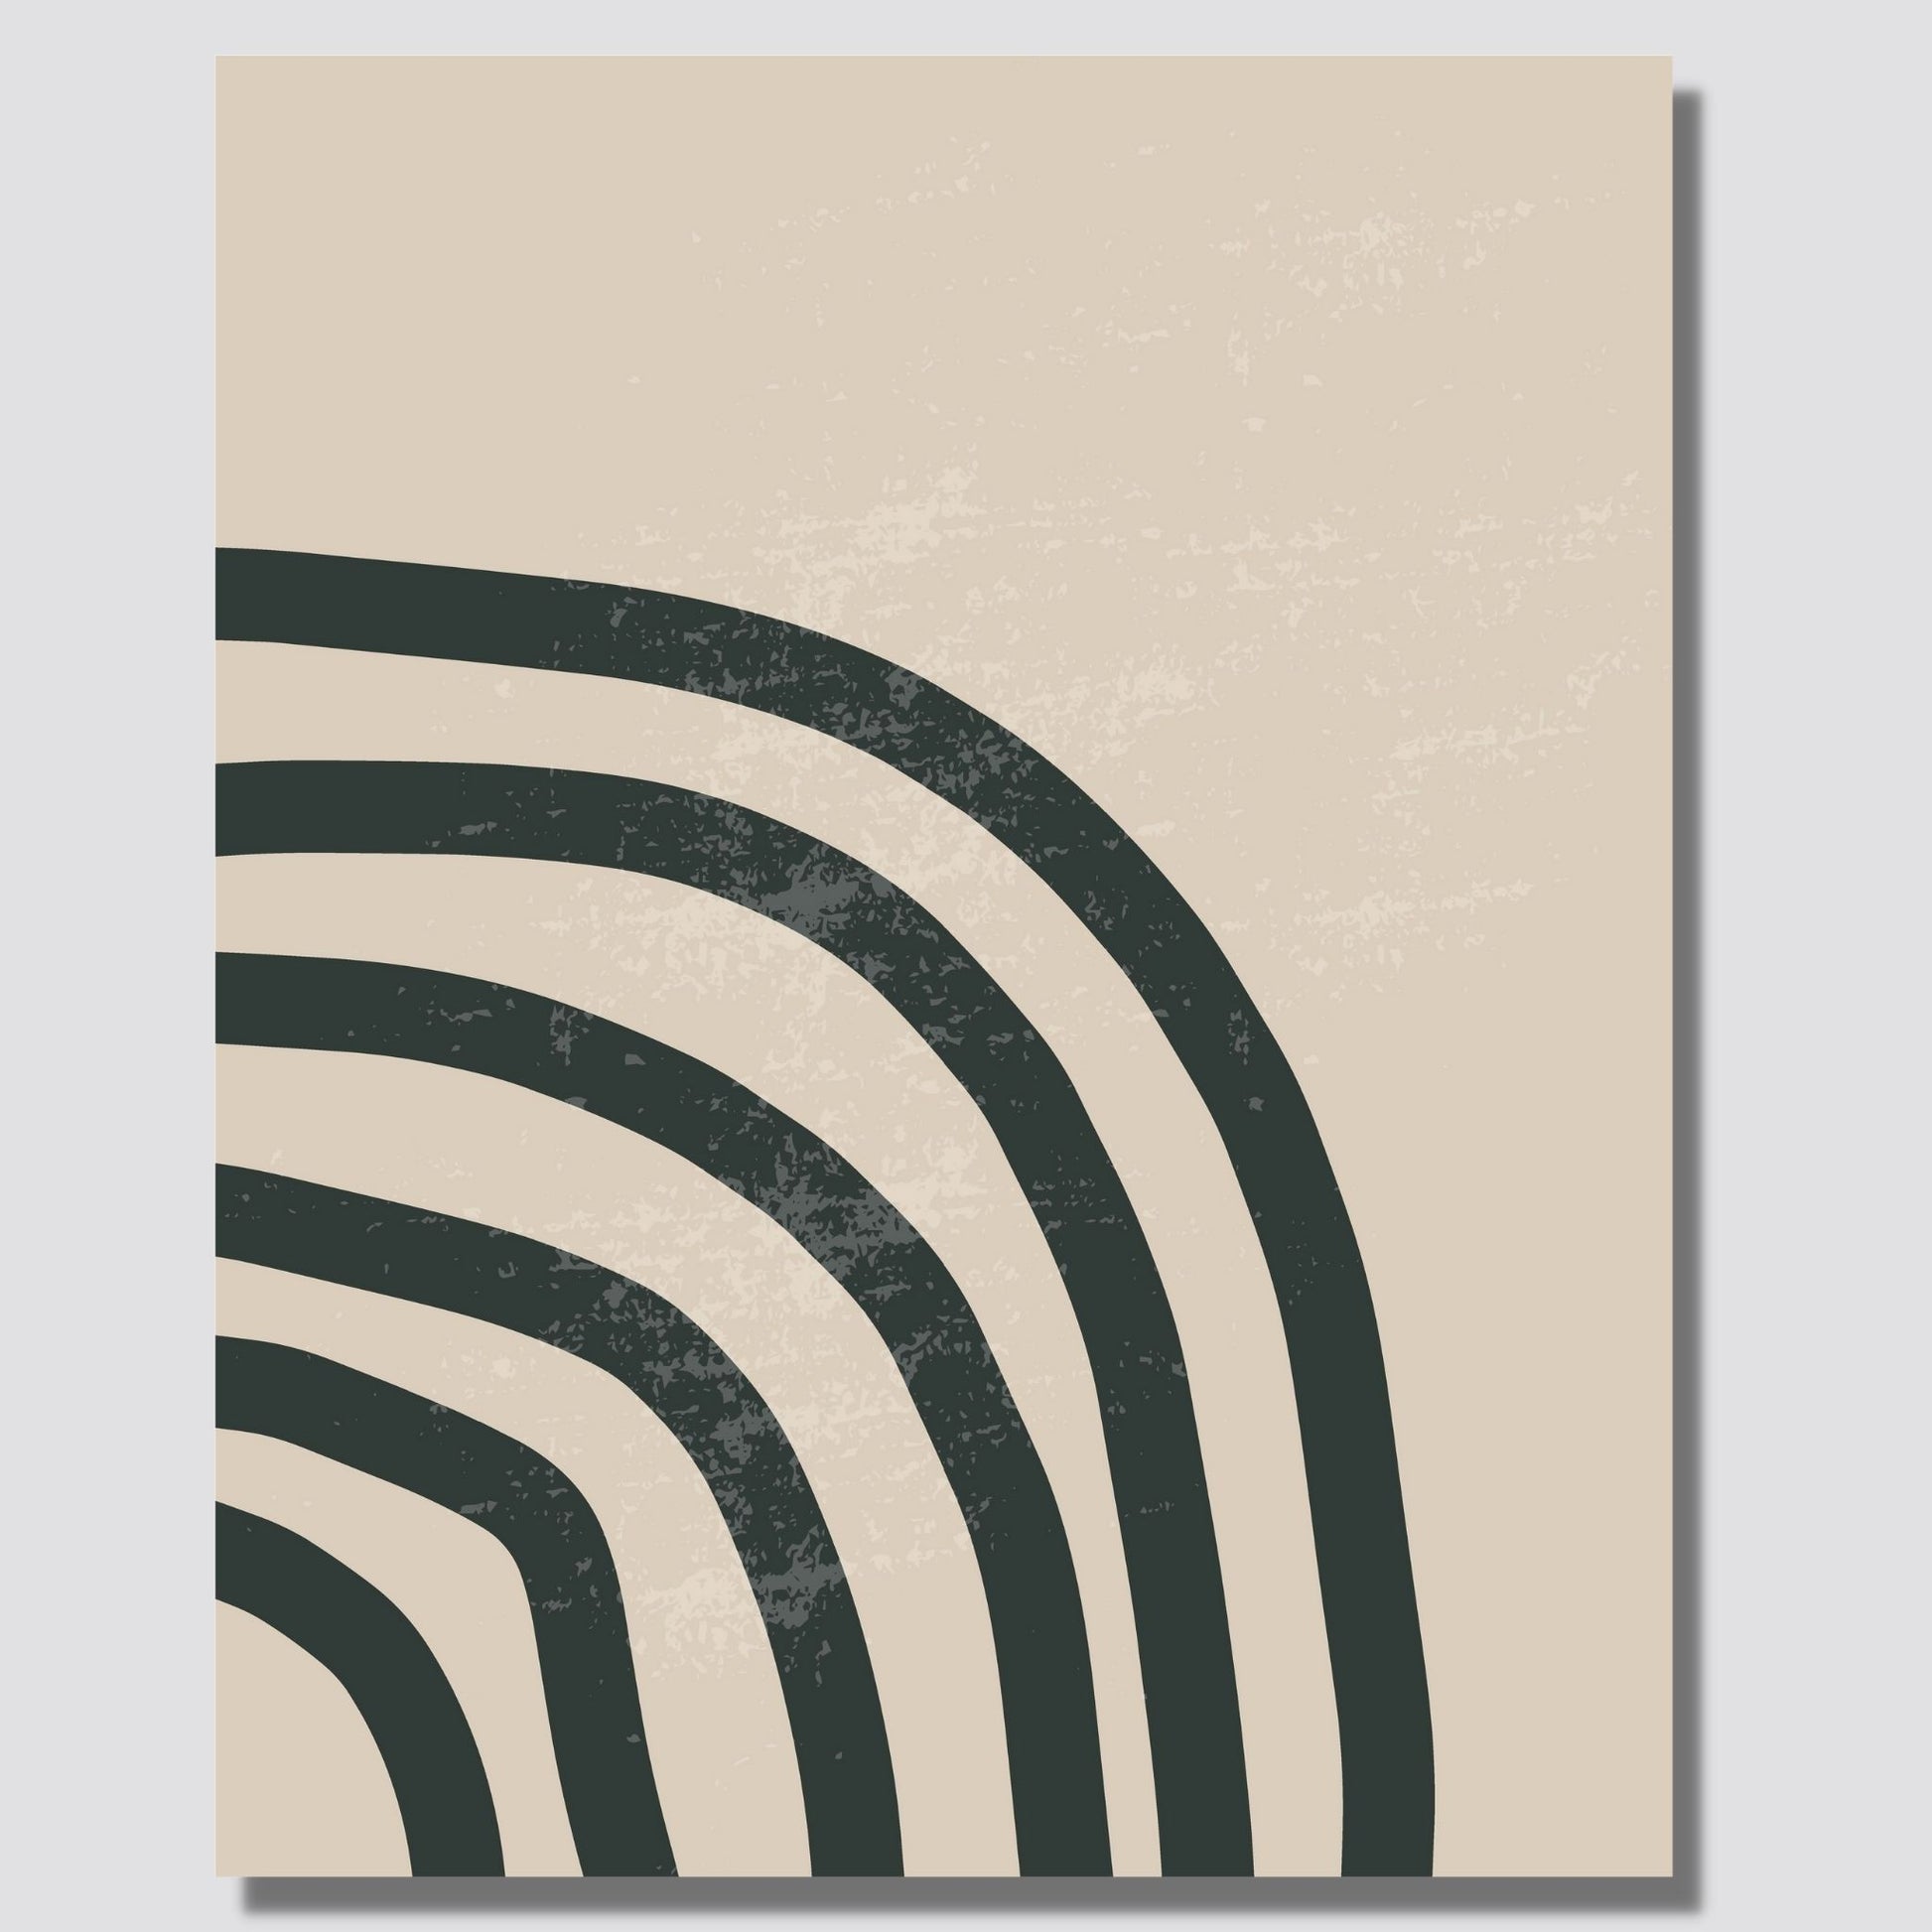 Abstrakt mønster med linjer i sort på beige bakgrunn. Illustrasjonen viser motivet på lerret.